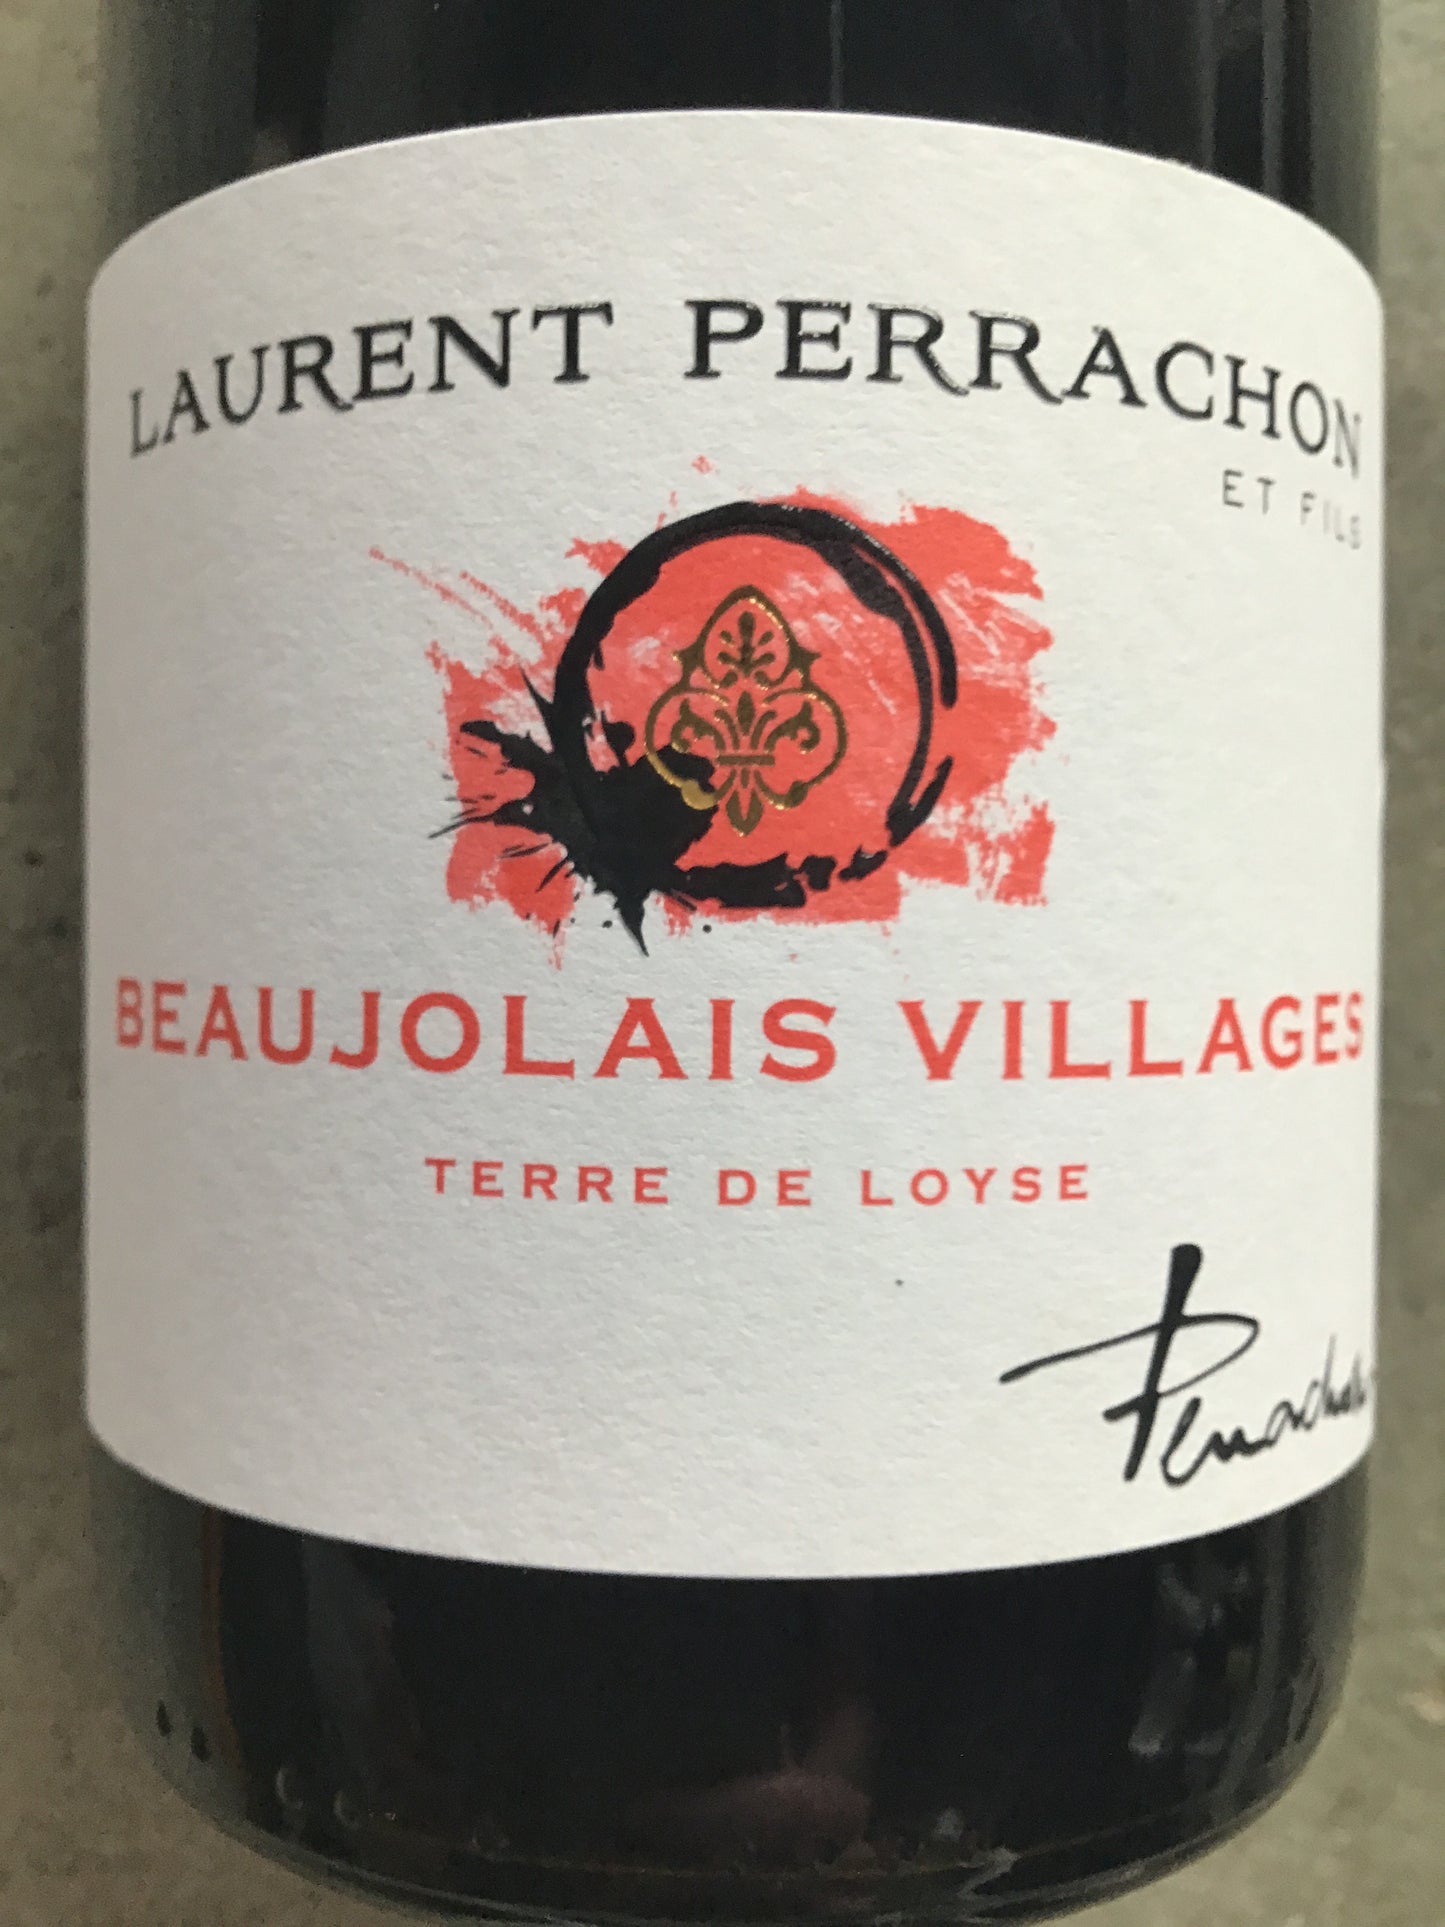 Perrachon 'Terre de Loyse' - Beaujolais Villages